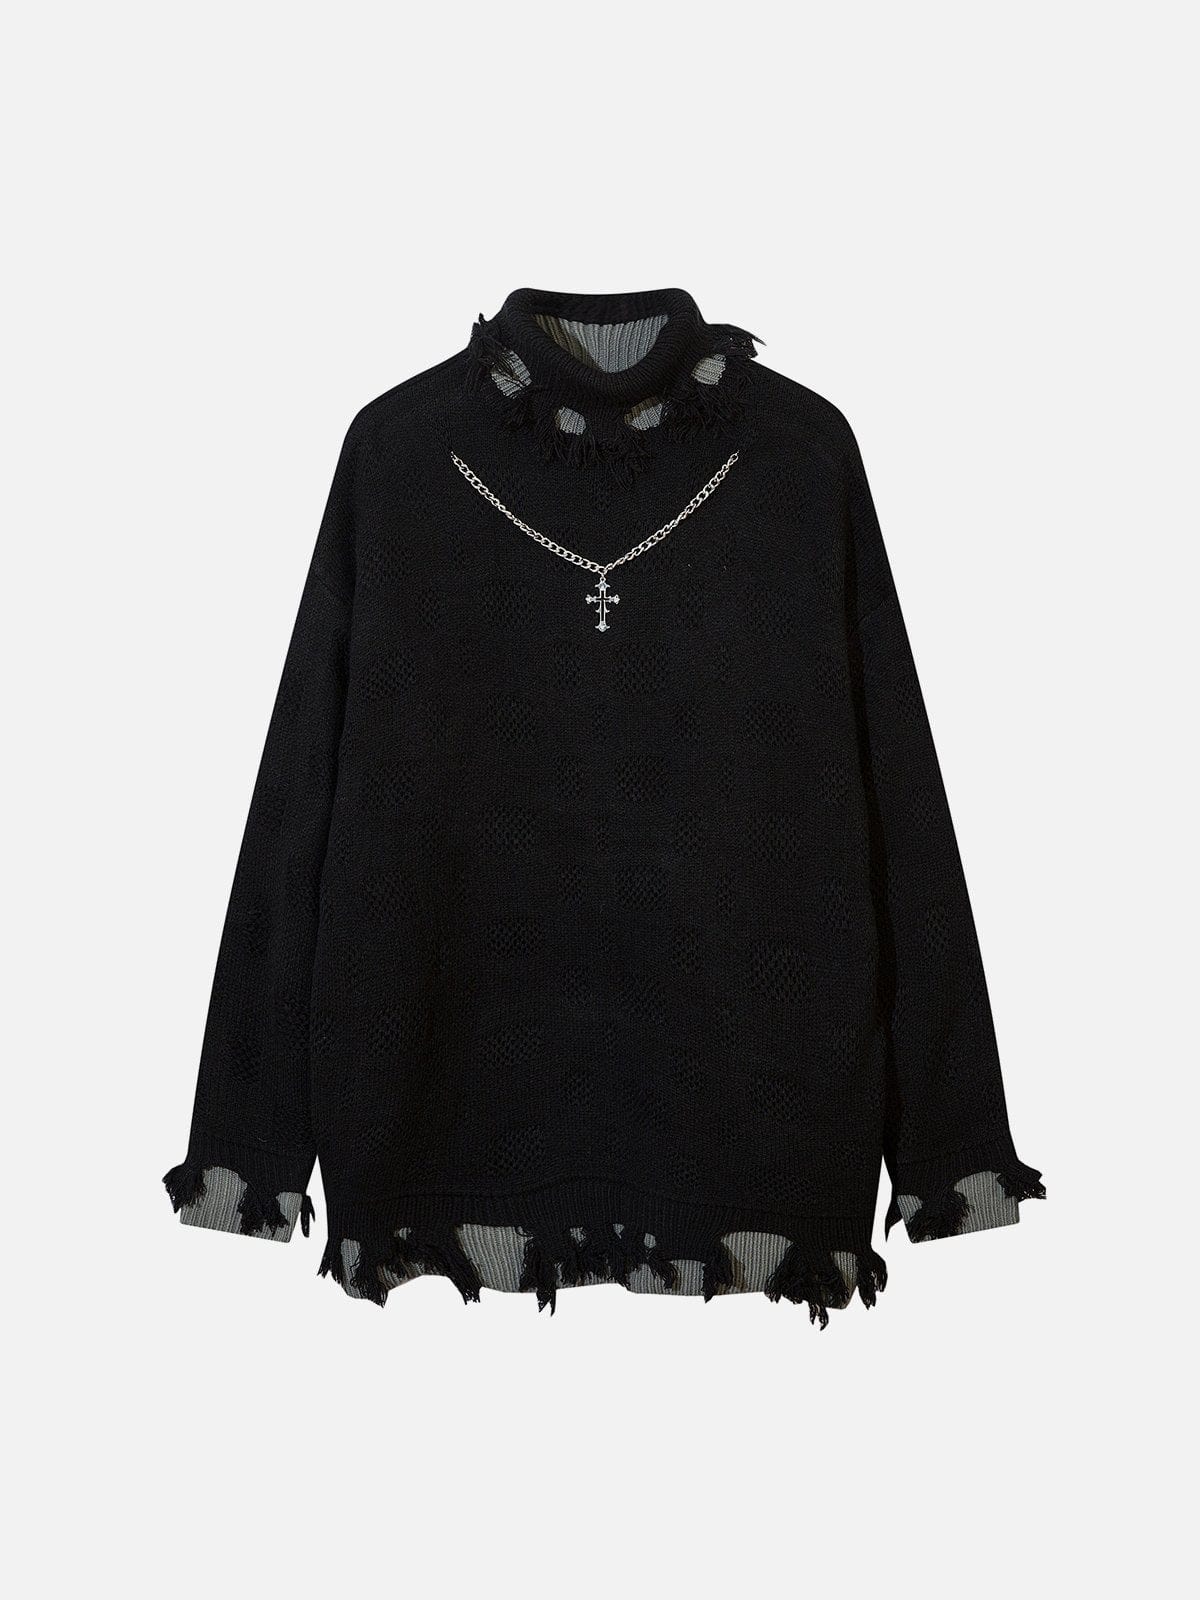 NEV Vintage Cross Necklace Sweater